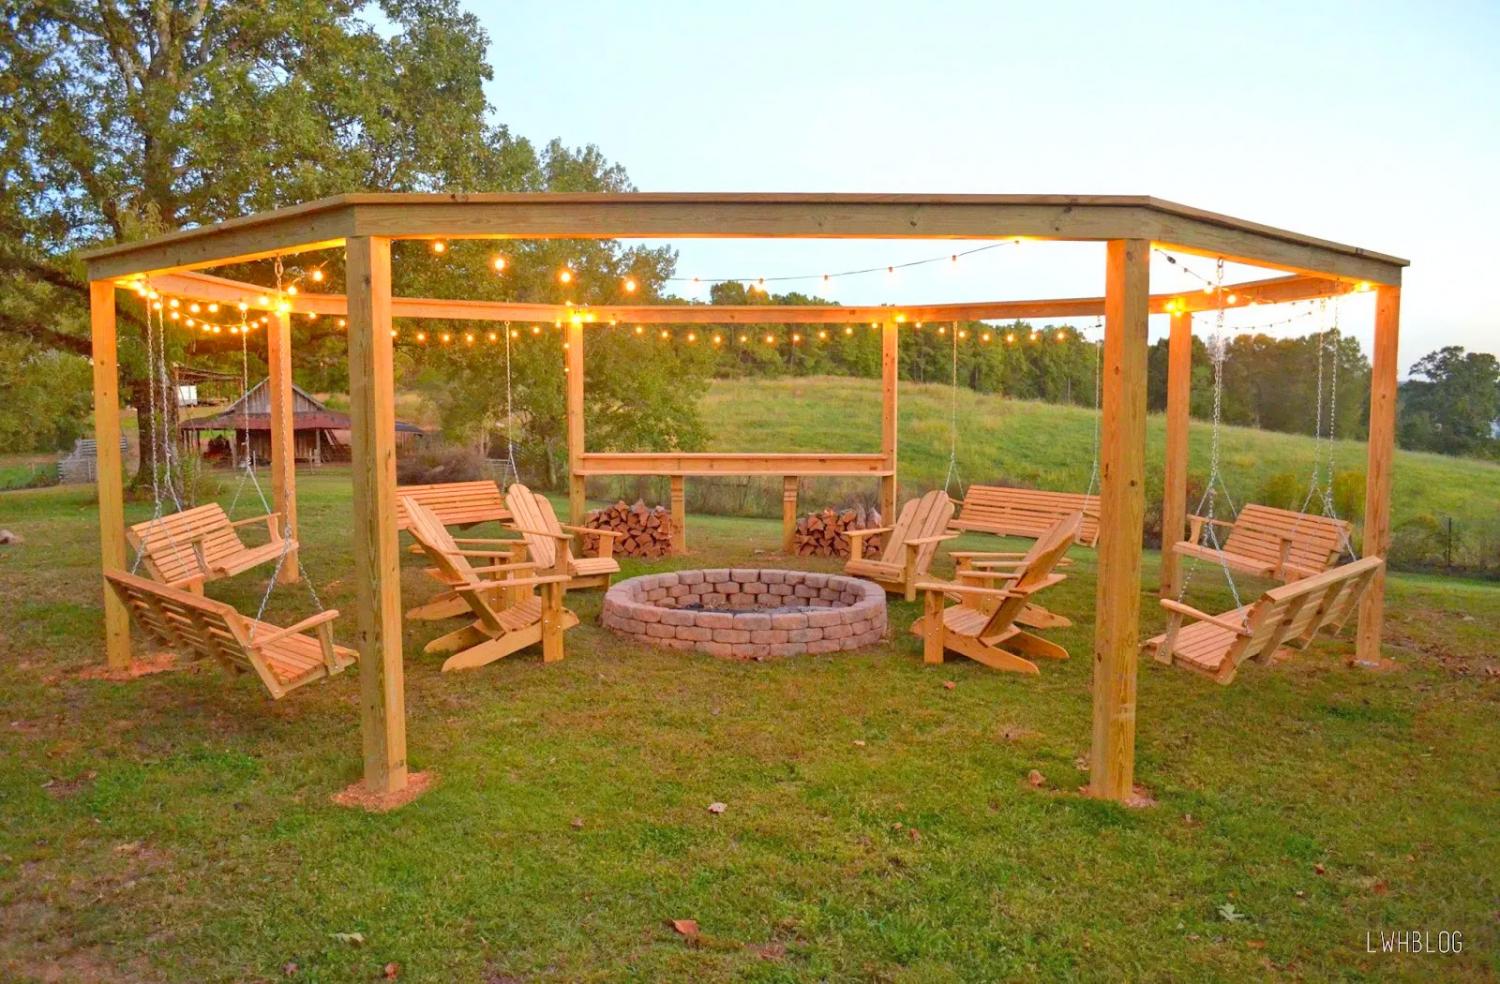 DIY Backyard Pergola With Swings - Wooden Fire Pit Pergola With Swings